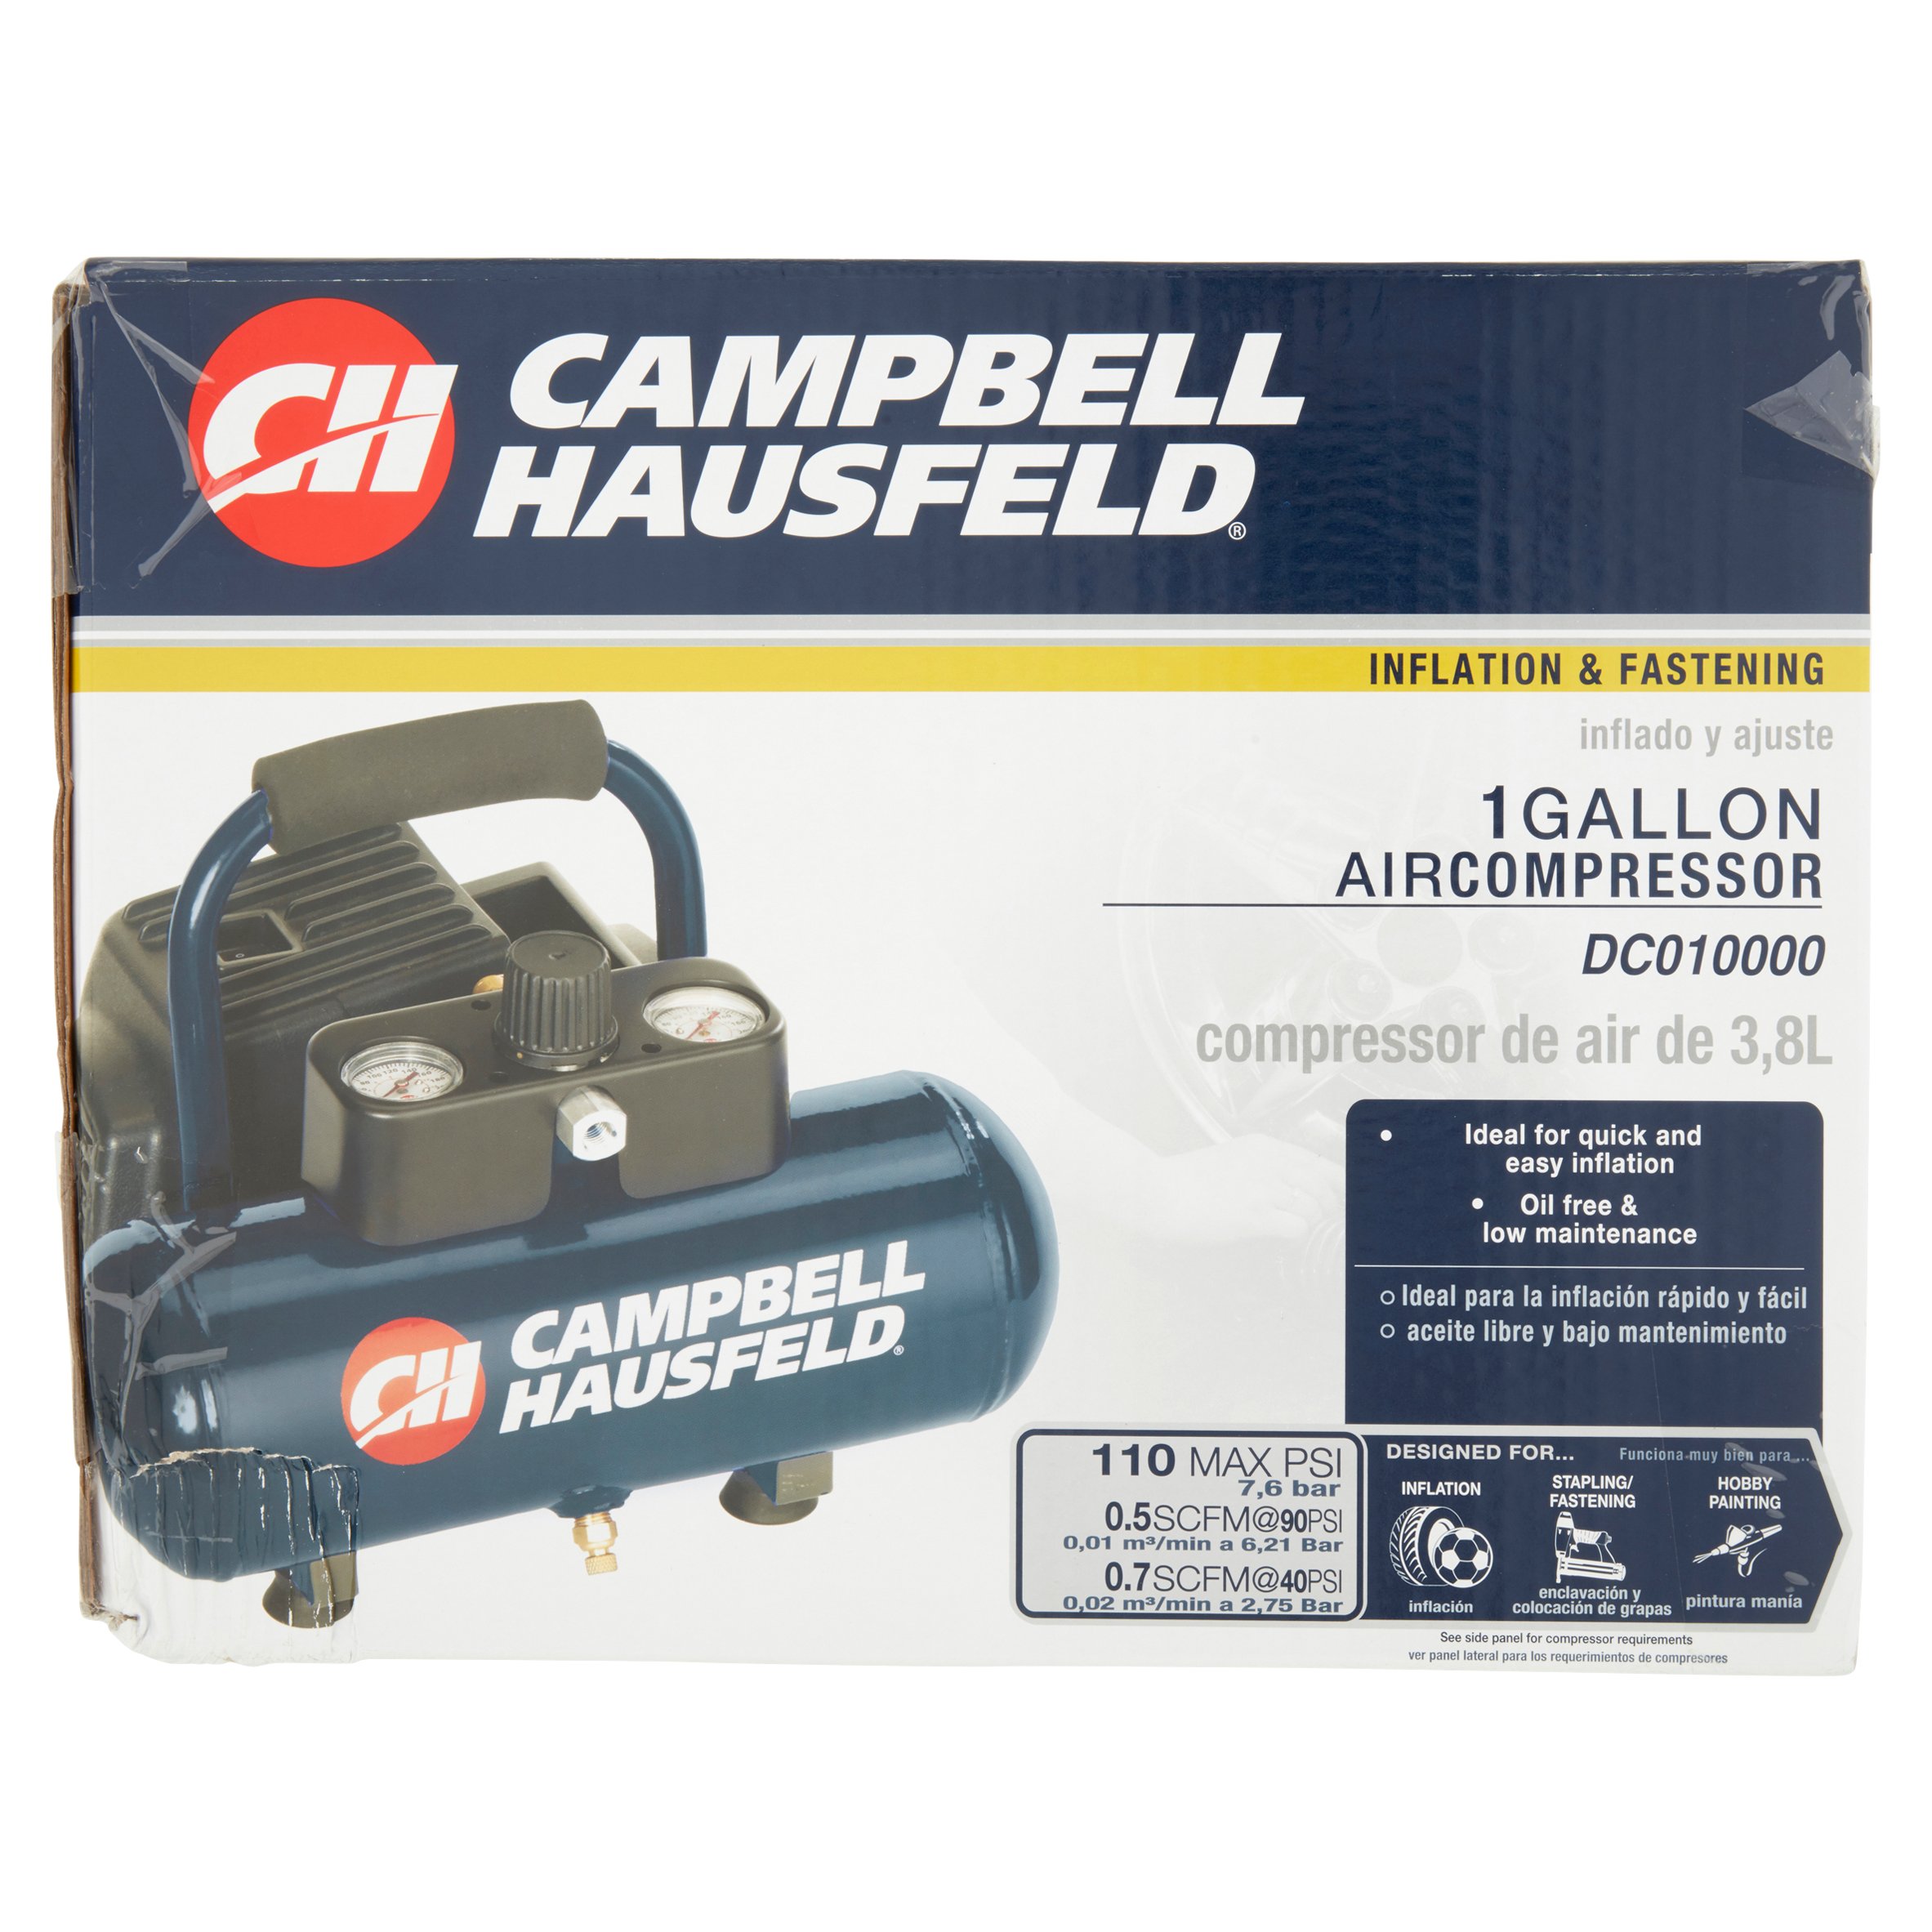 Campbell hausfeld pancake air compressor user manual free